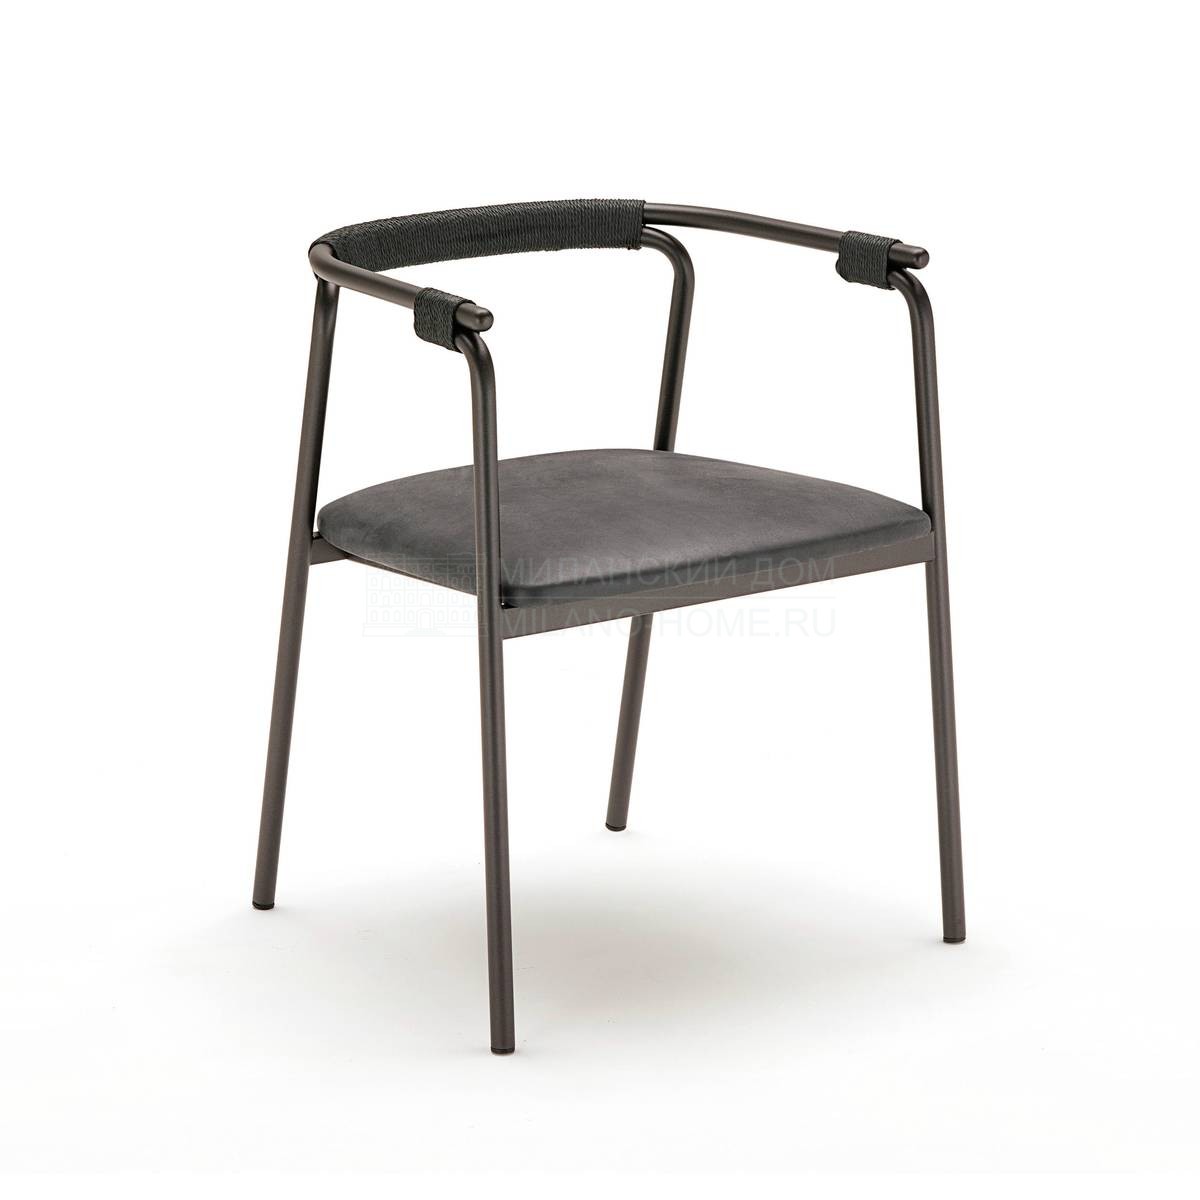 Полукресло Rivulet chair из Италии фабрики LIVING DIVANI